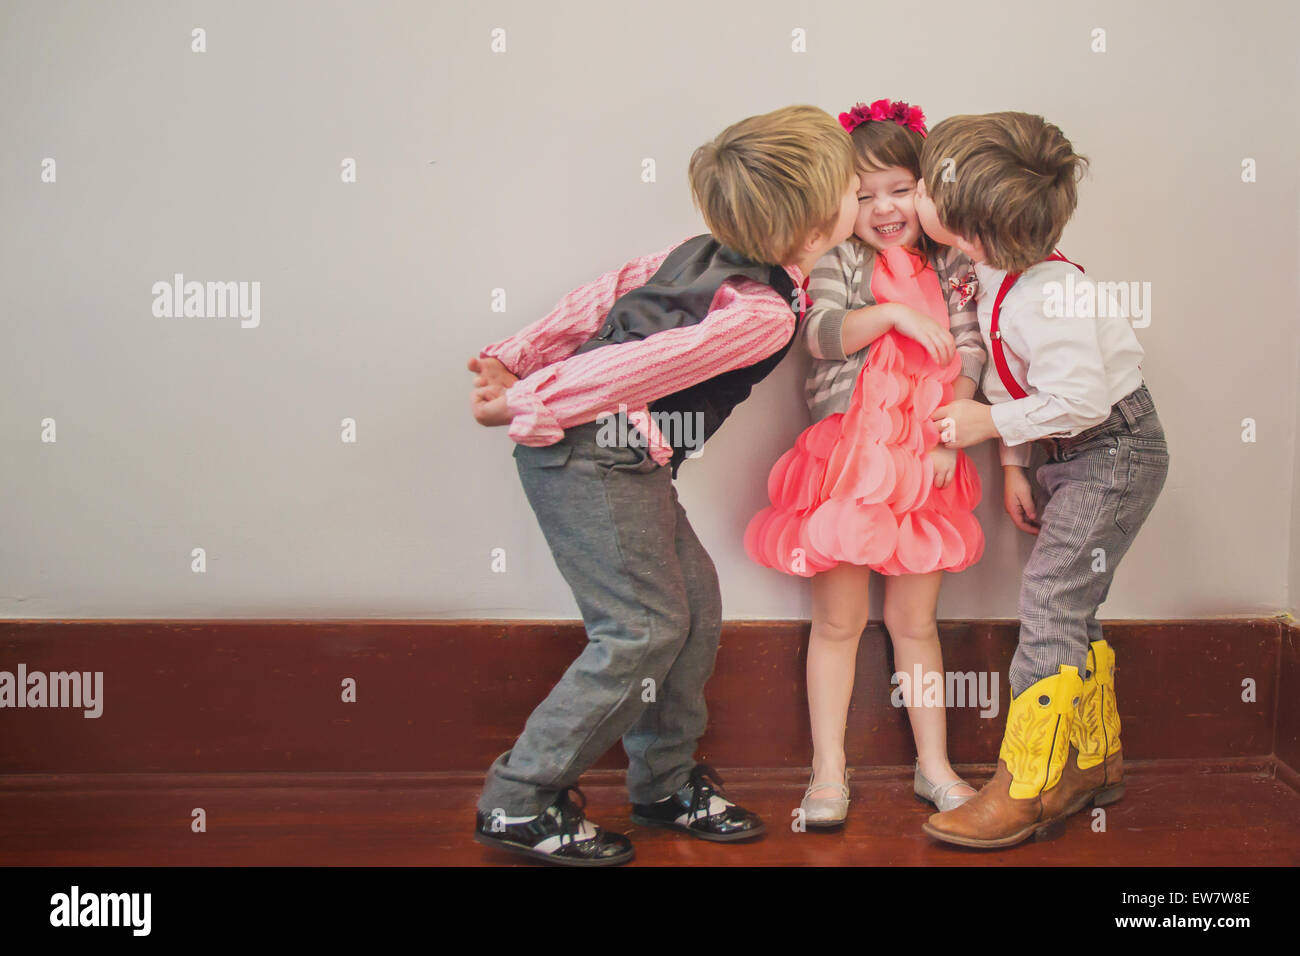 Zwei Jungen Eine Mädchen Auf Die Wange Küssen Stockfotografie Alamy 